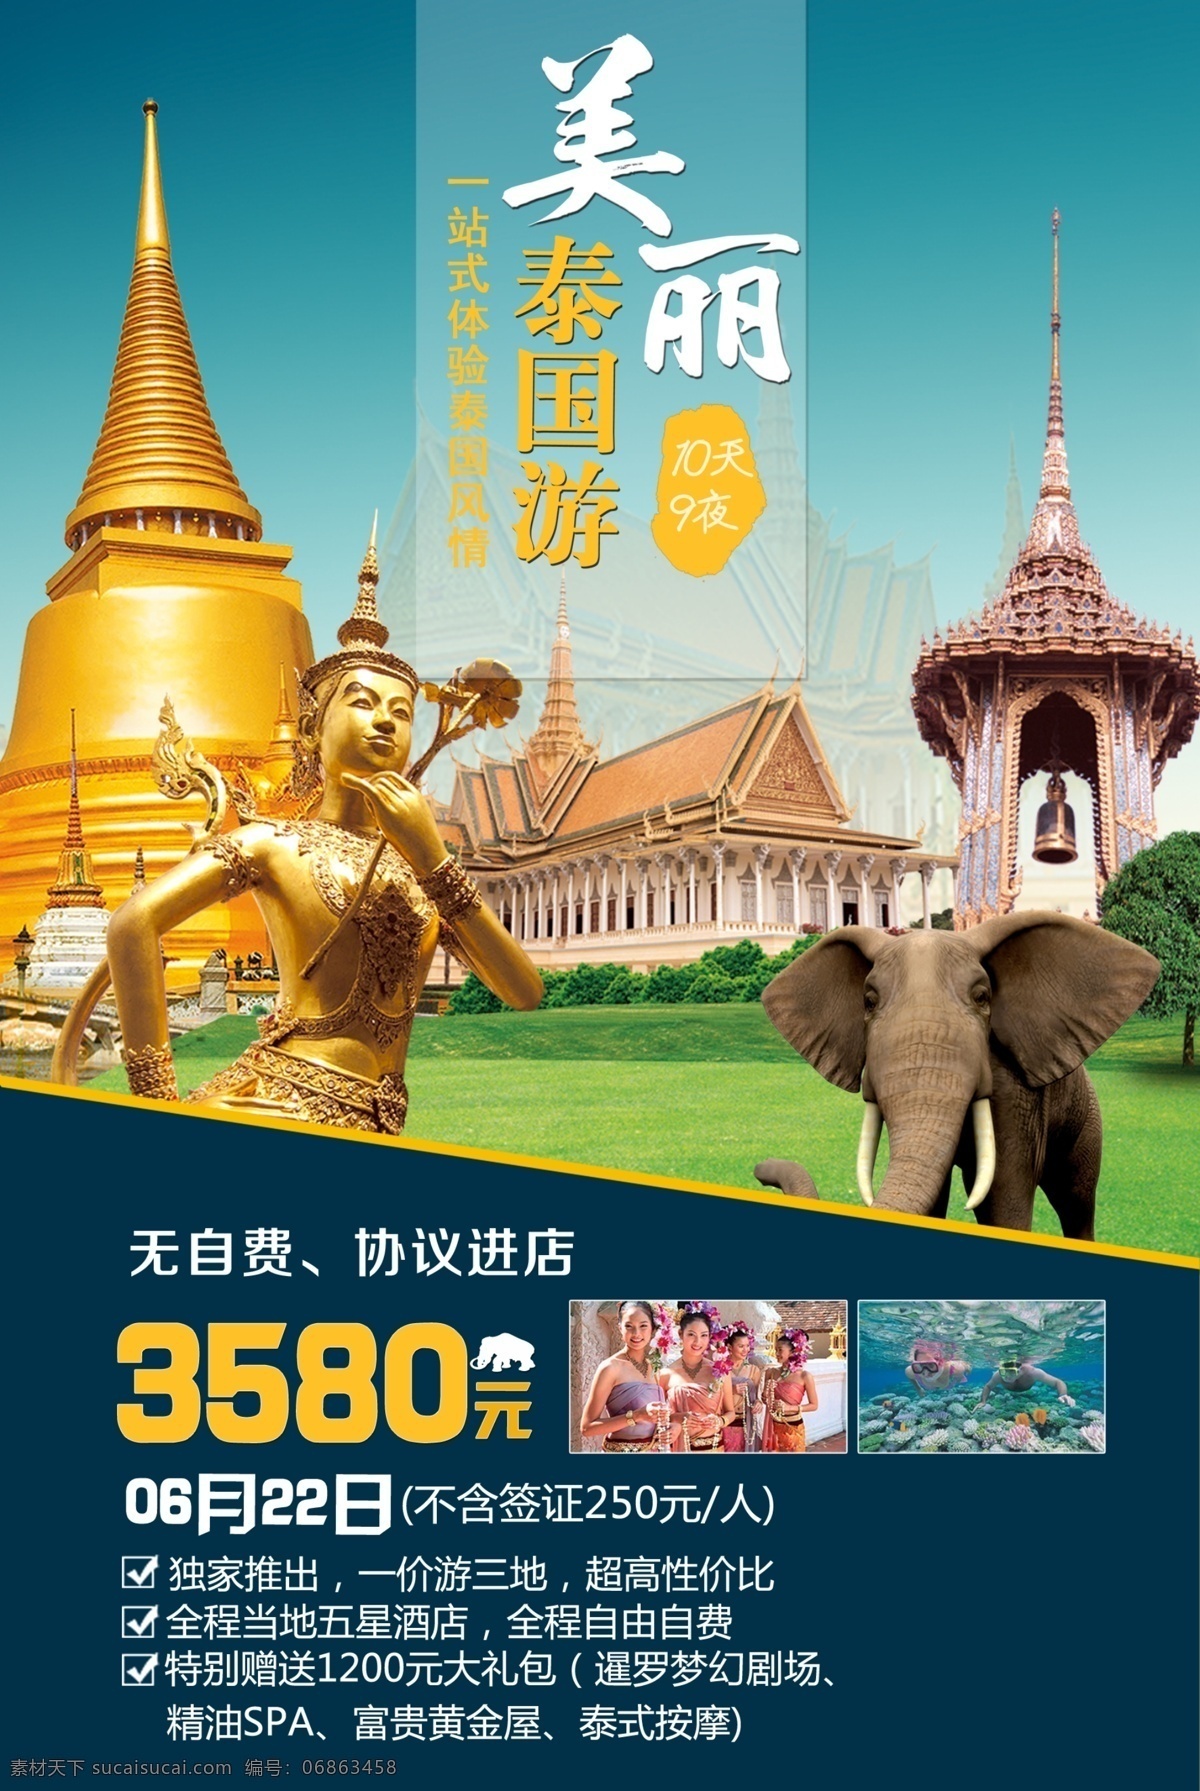 泰国图片 泰国 旅游 出行 旅行 海报 微海报 旅游海报图